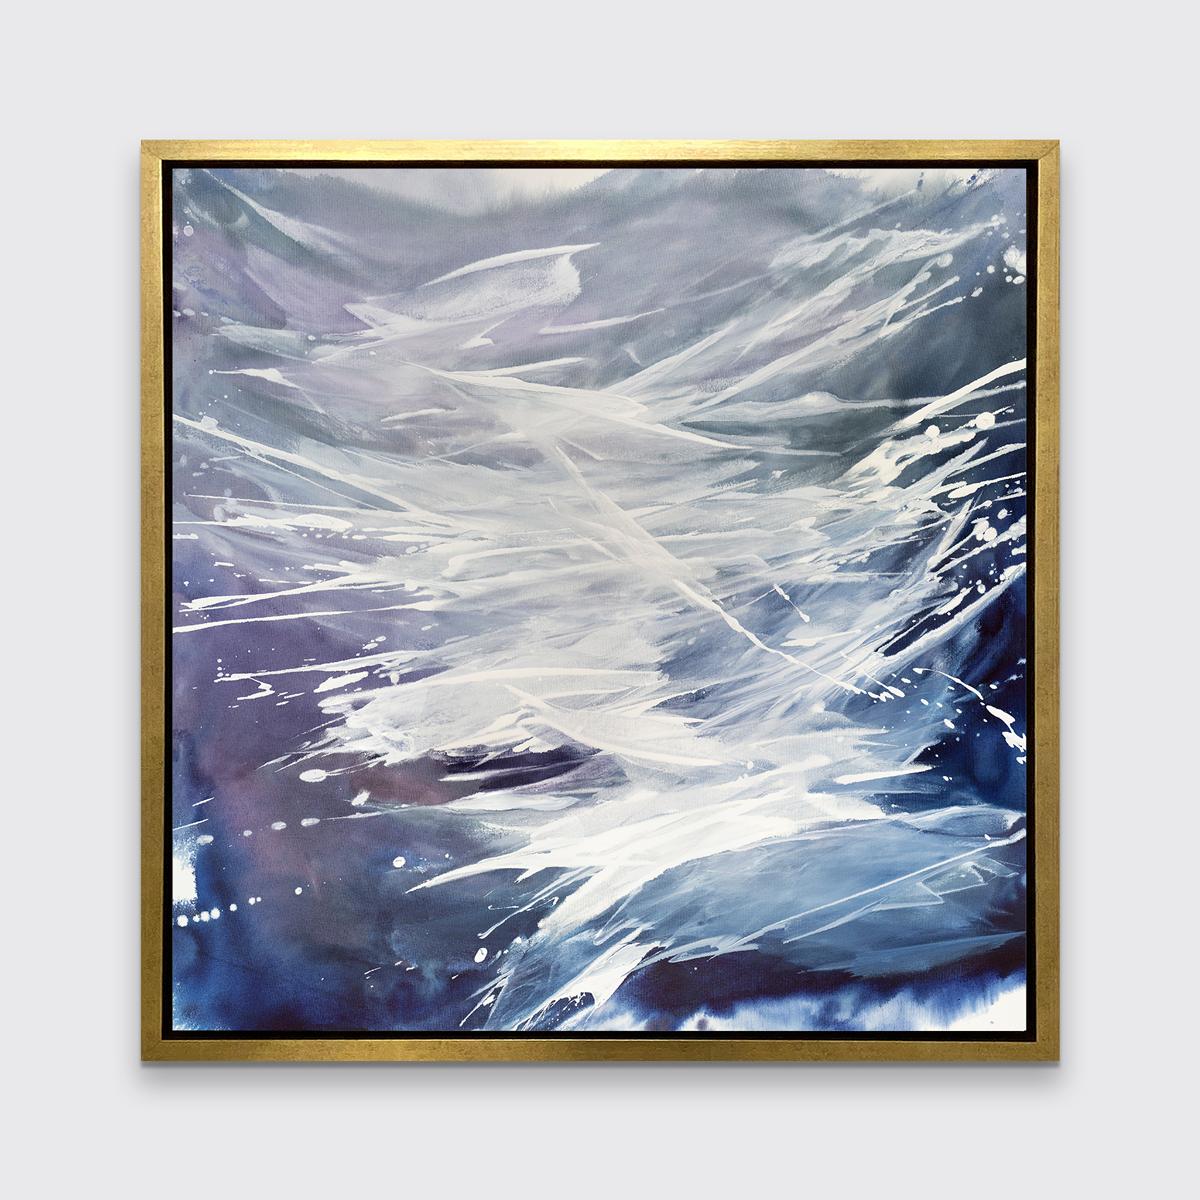 Dieser zeitgenössische abstrakte Druck in limitierter Auflage von Teodora Guererra zeichnet sich durch eine kühle Farbpalette aus, bei der sich blaue, graue, violette und weiße Farbtöne in schwungvollen Gesten über das Werk verteilen.

Dieser